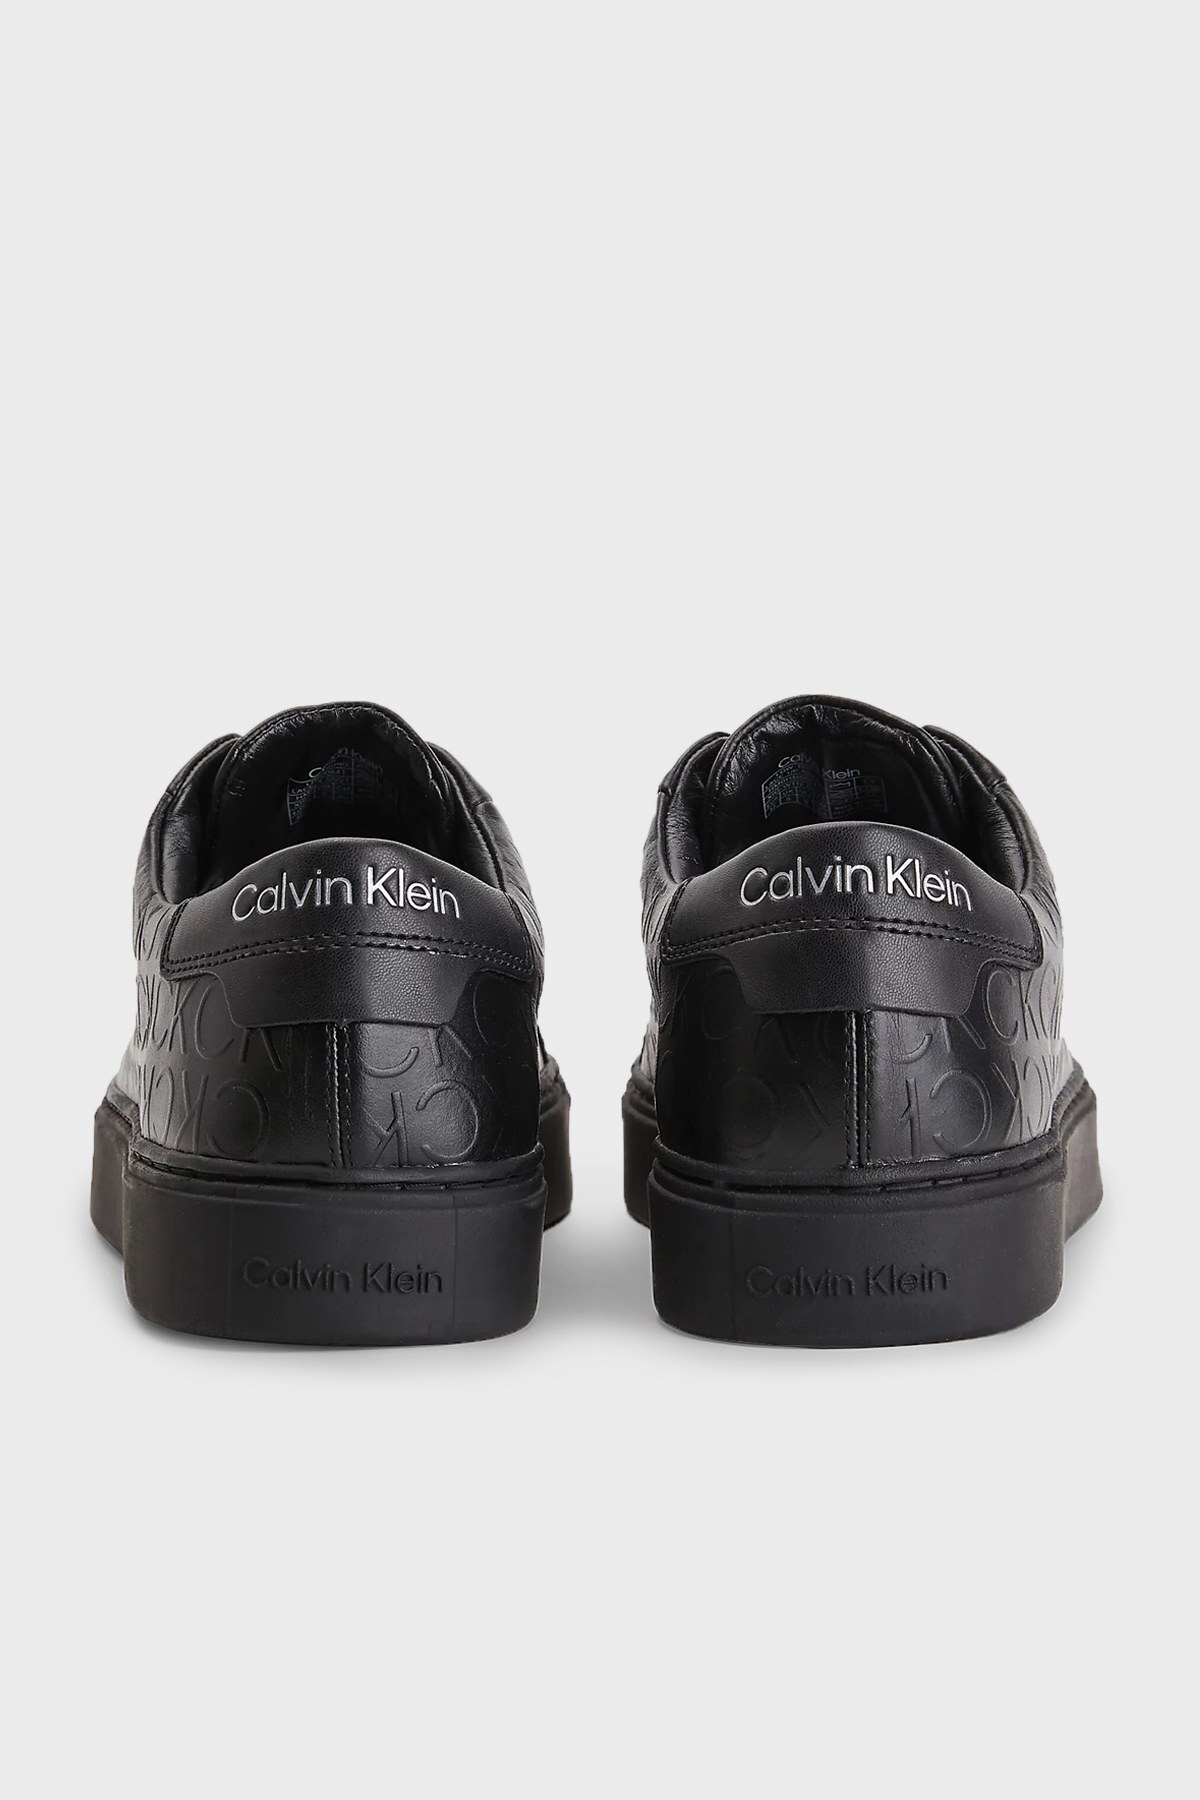 Calvin Klein Logo Baskılı Hakiki Deri Sneaker Erkek Ayakkabı HM0HM00641 00U SİYAH